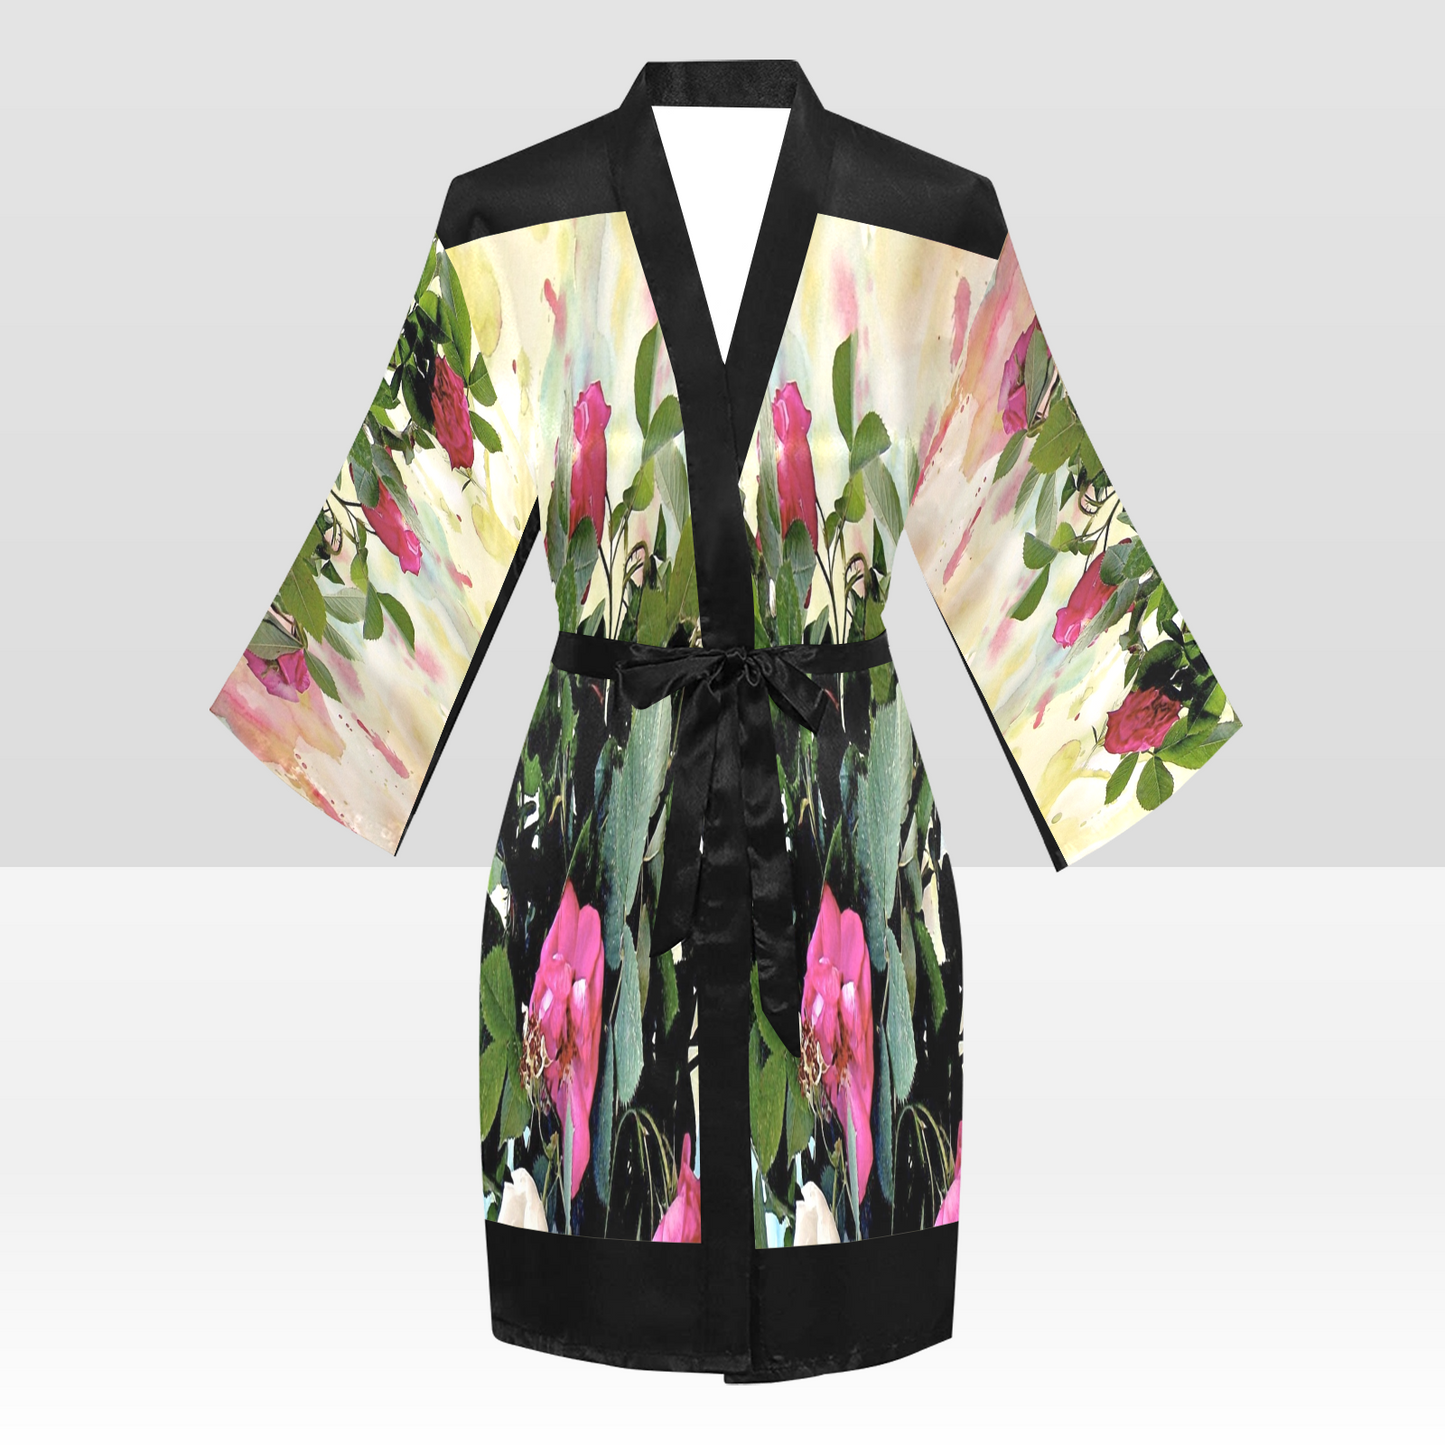 Vintage Floral Kimono Robe, Black or White Trim, Sizes XS to 2XL, Design 22